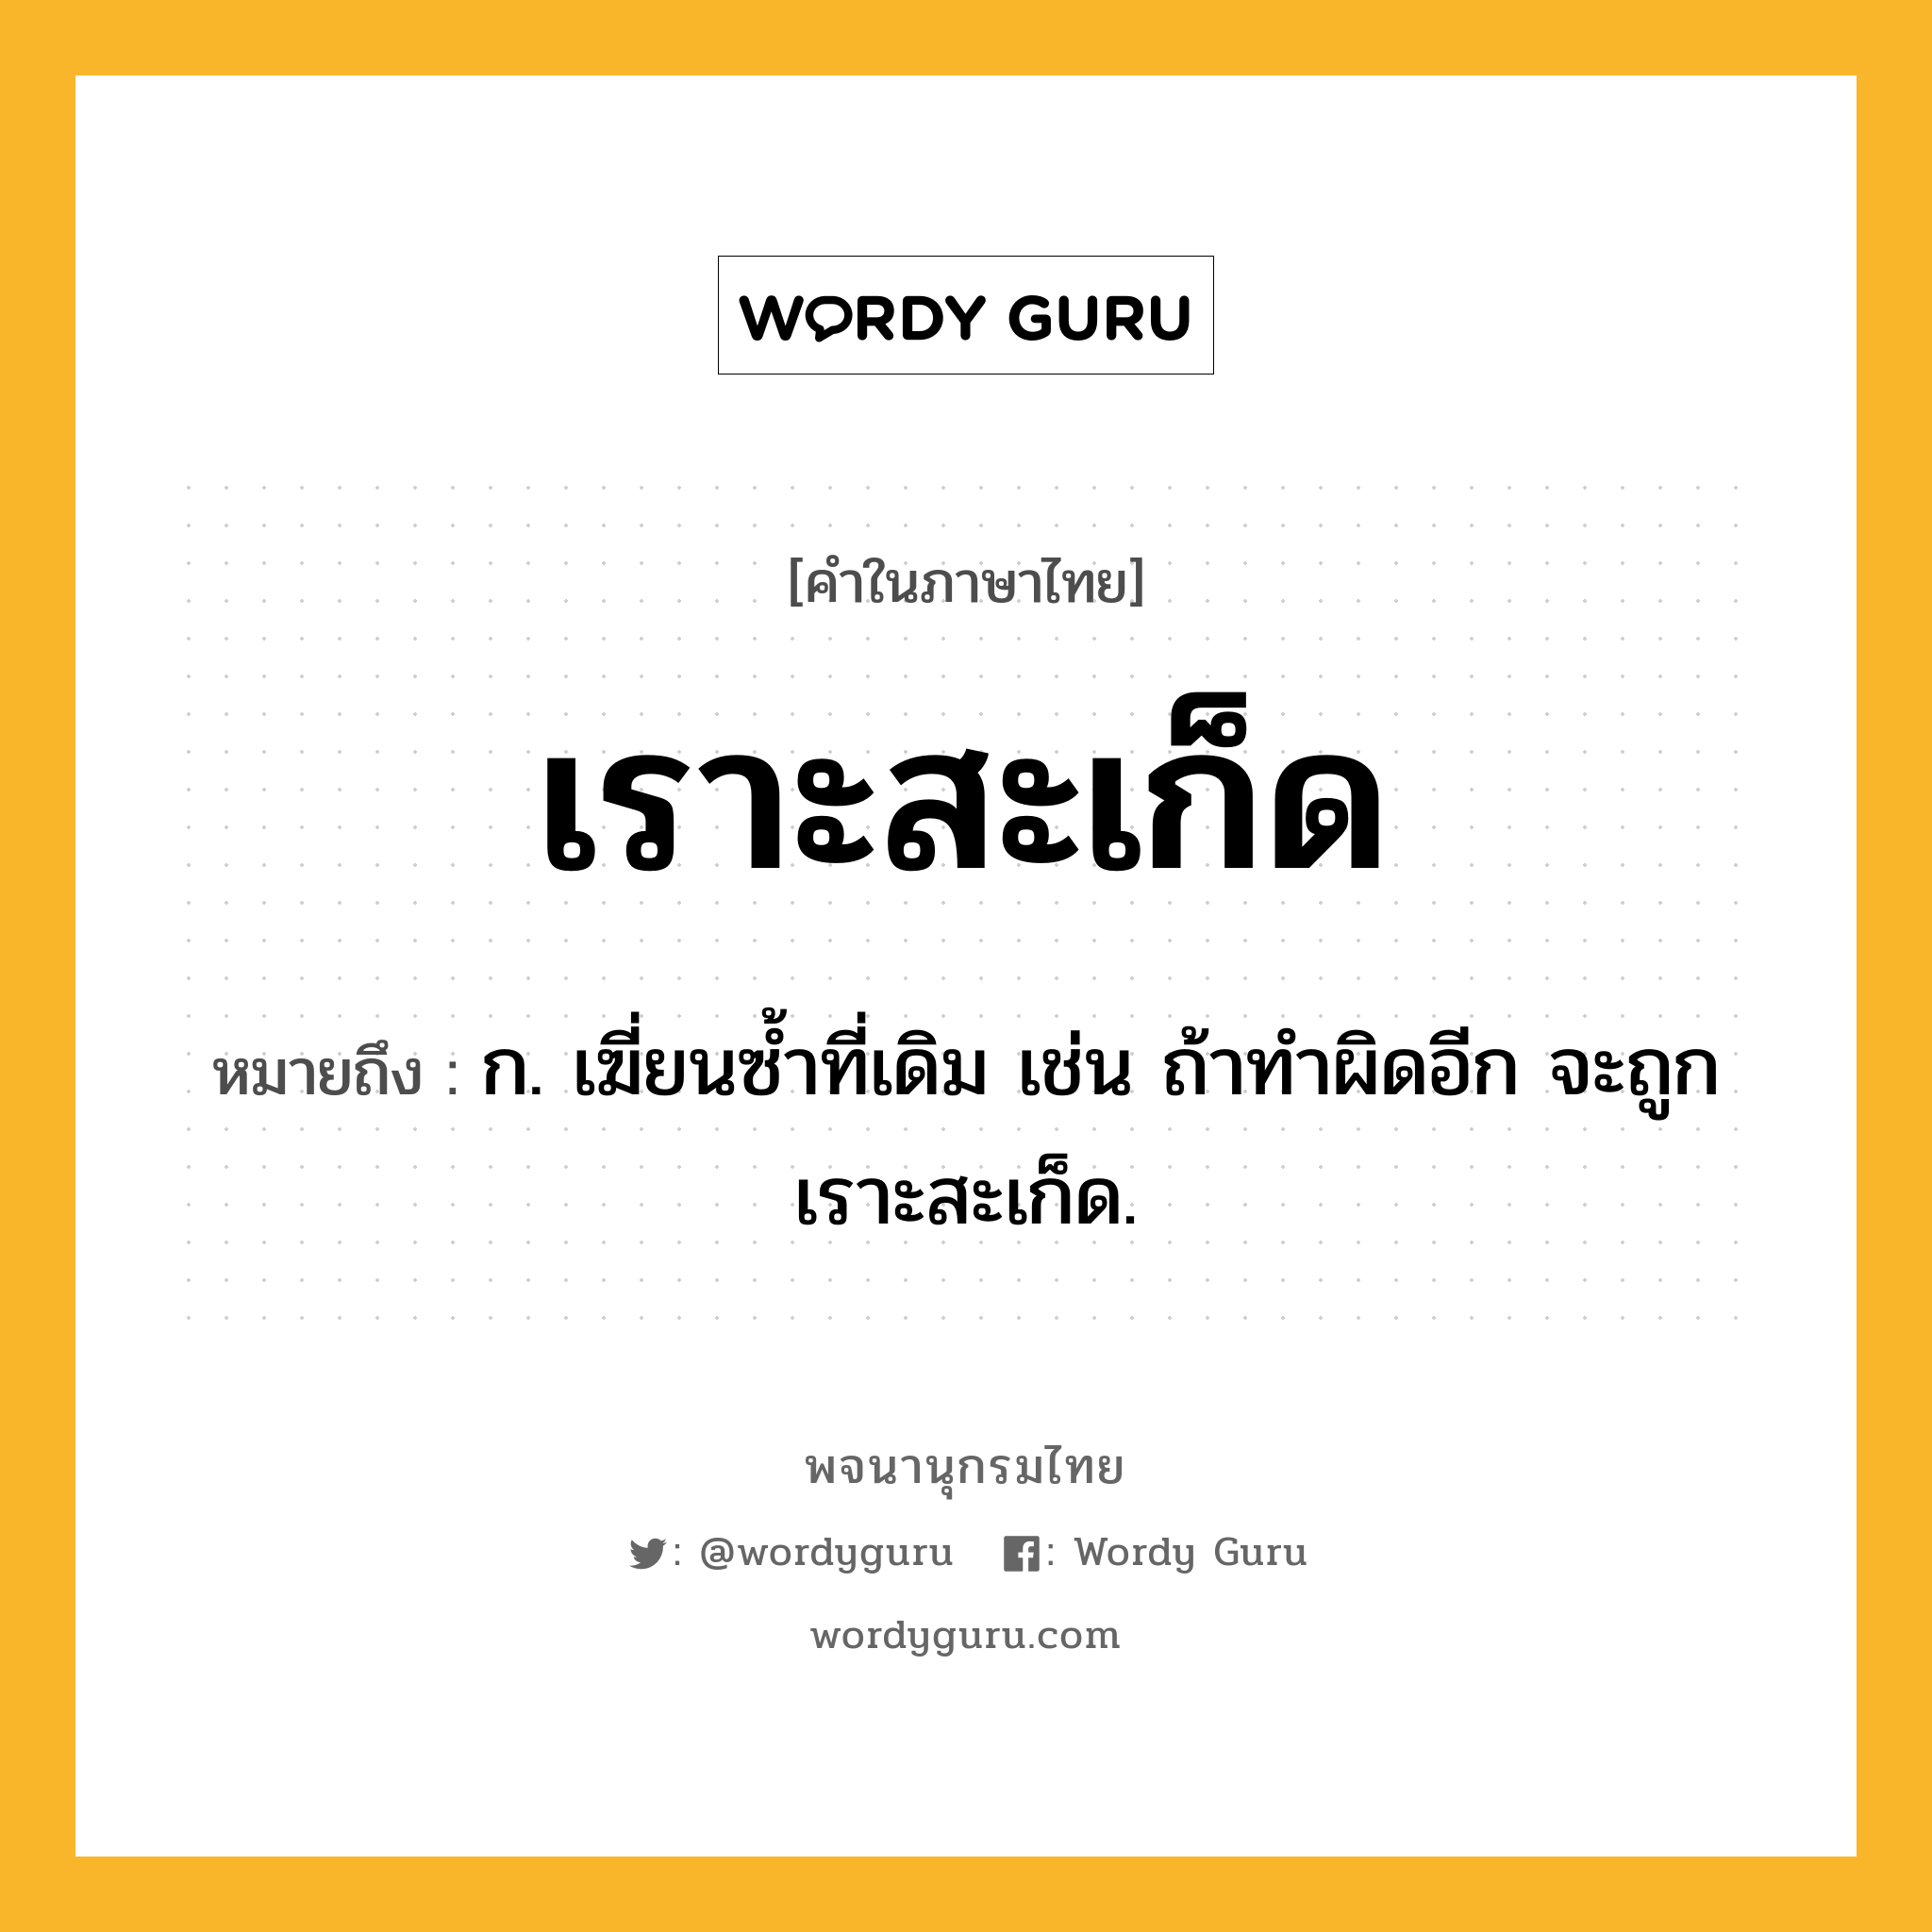 เราะสะเก็ด หมายถึงอะไร?, คำในภาษาไทย เราะสะเก็ด หมายถึง ก. เฆี่ยนซ้ำที่เดิม เช่น ถ้าทำผิดอีก จะถูกเราะสะเก็ด.